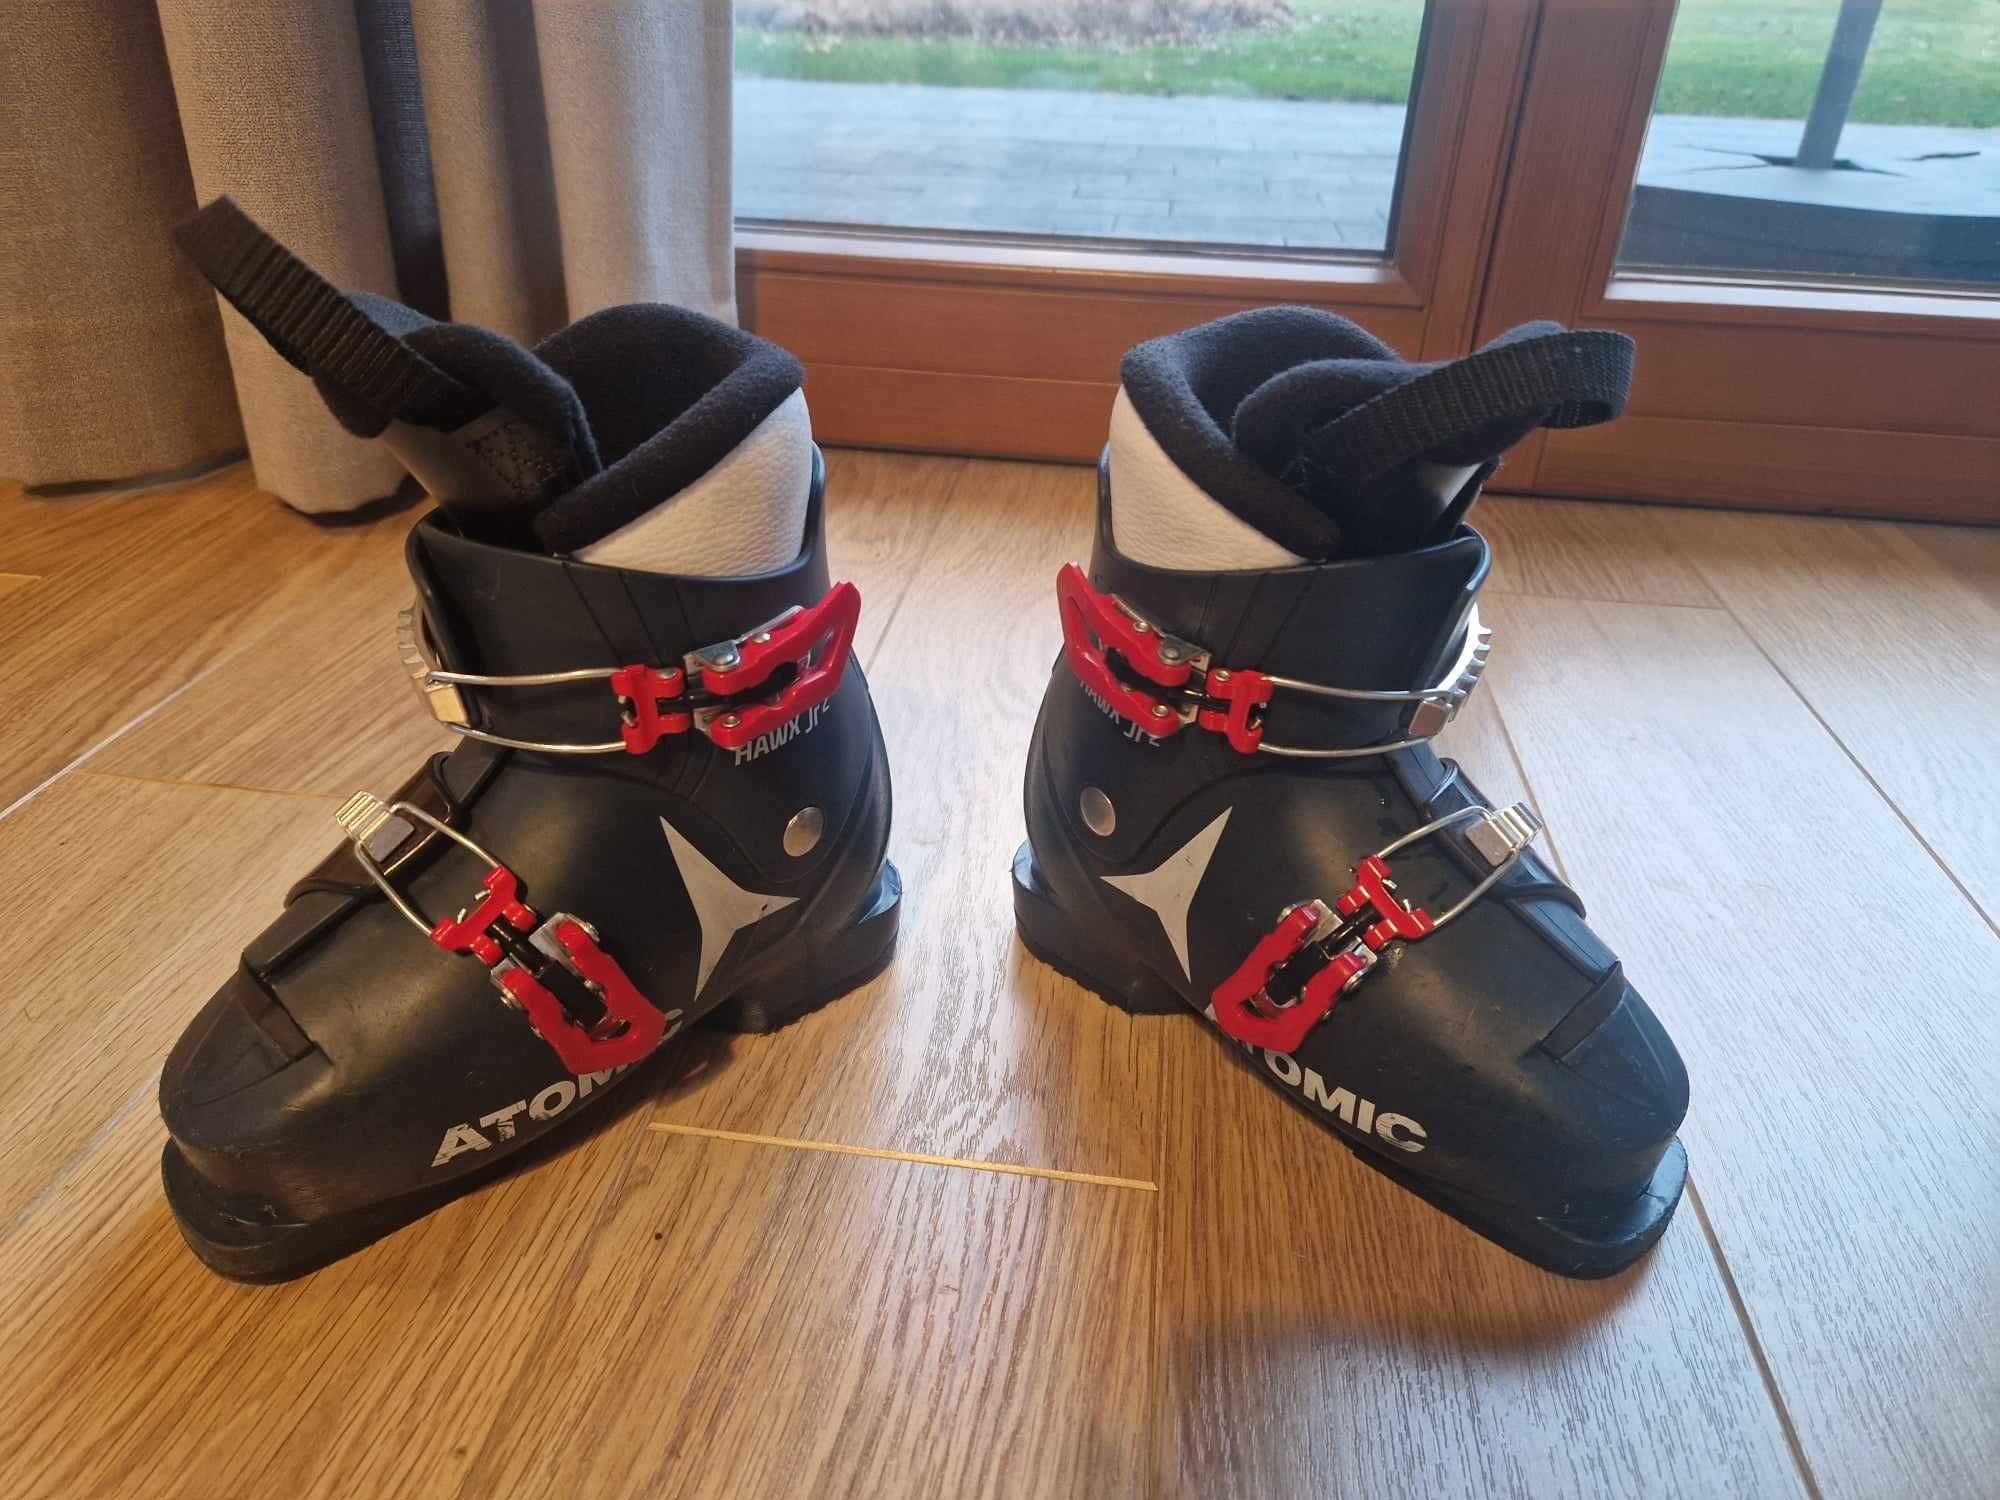 Buty narciarskie dziecięce Atomic Hawx JR2 rozmiar 19.0/19.5